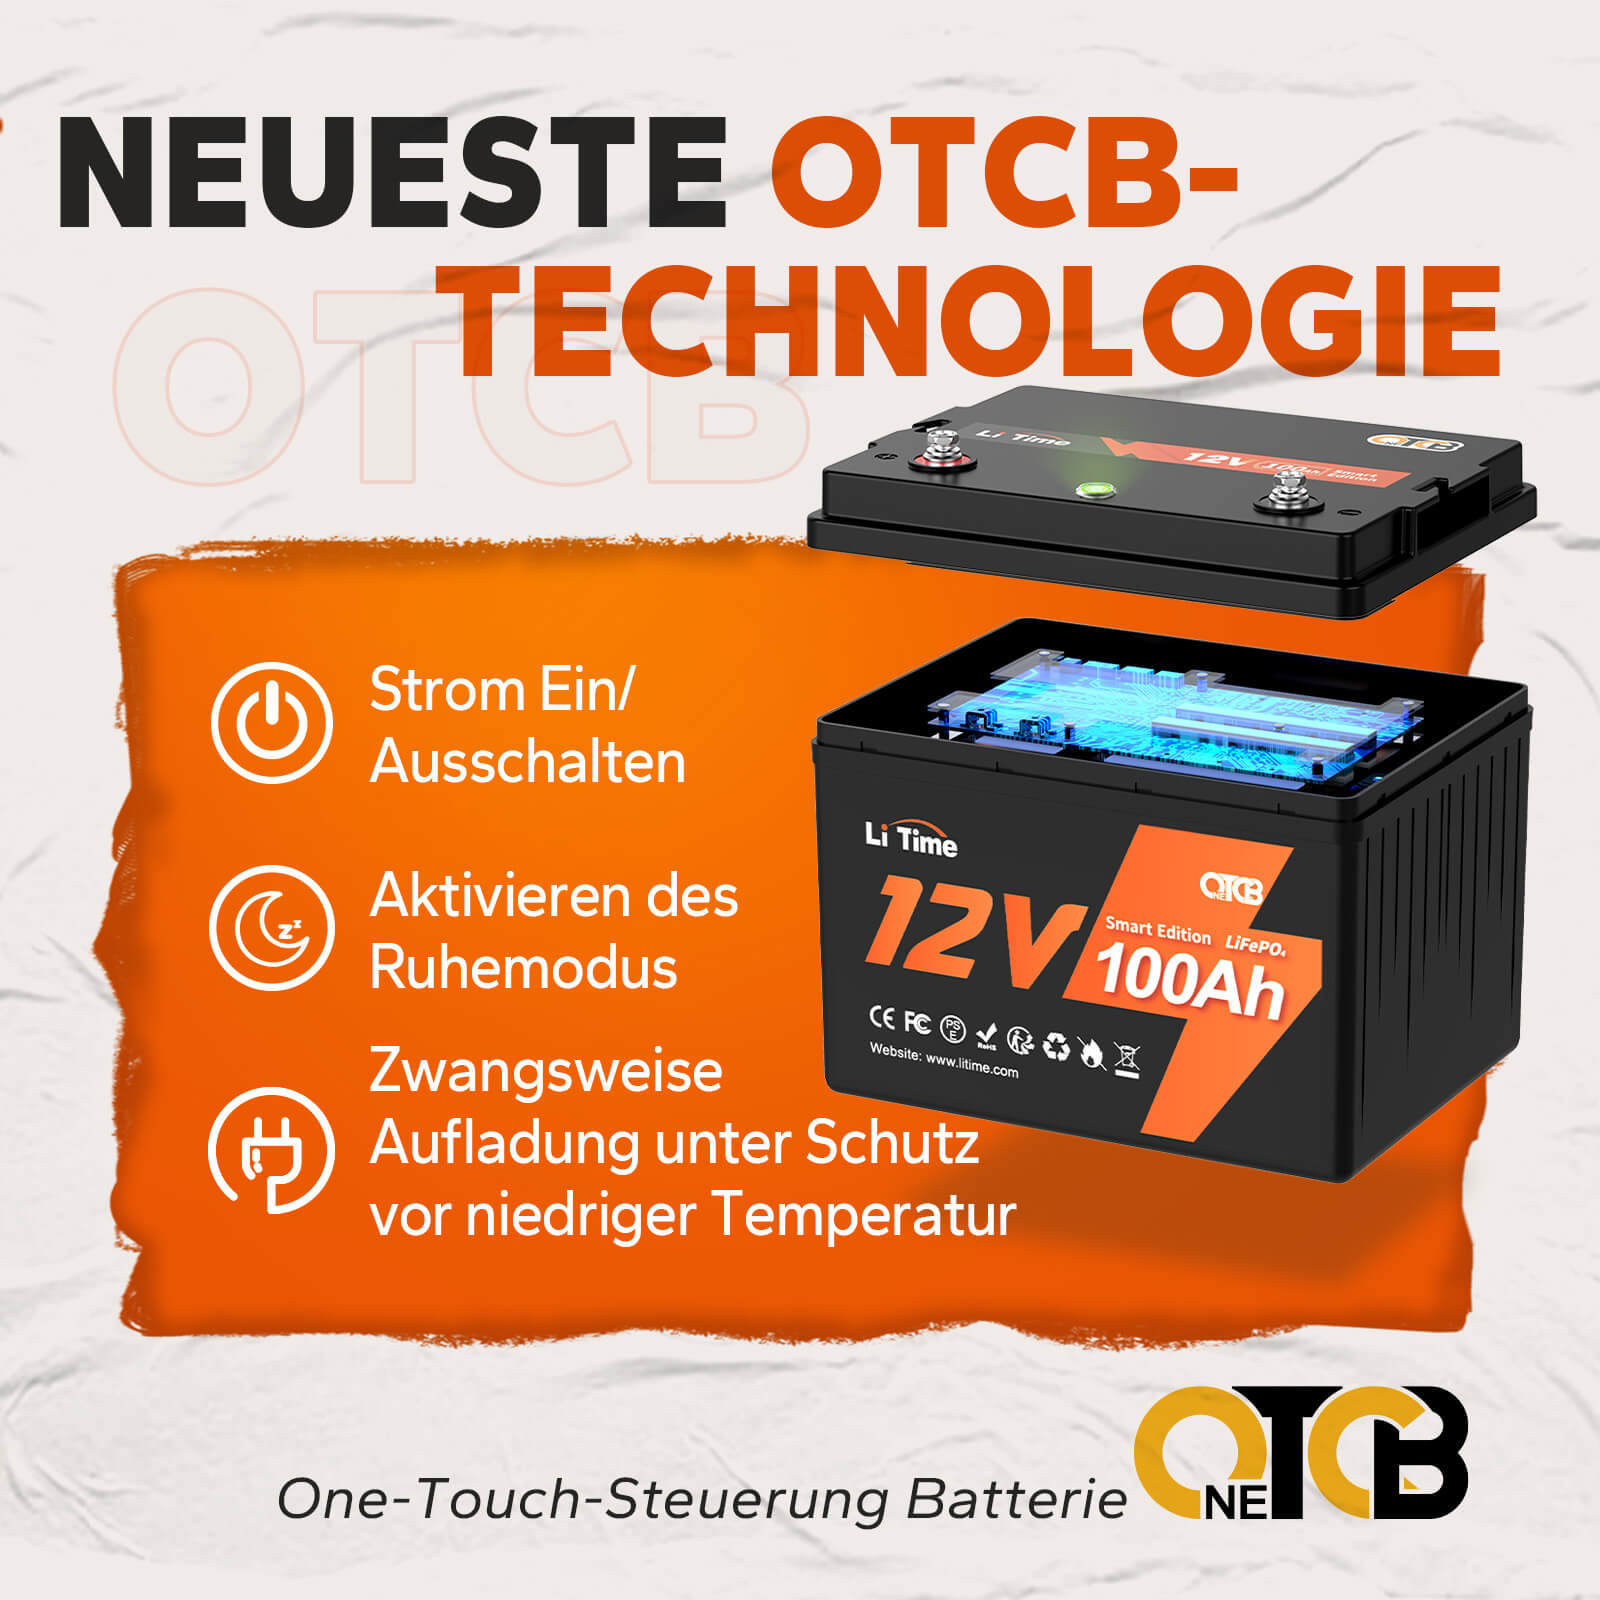 【0% TVA】Batterie LiTime 12V 100Ah Smart Lithium LiFePO4 (UNIQUEMENT pour les bâtiments résidentiels et UNIQUEMENT en DEU - Uniquement pour les clients en Allemagne)